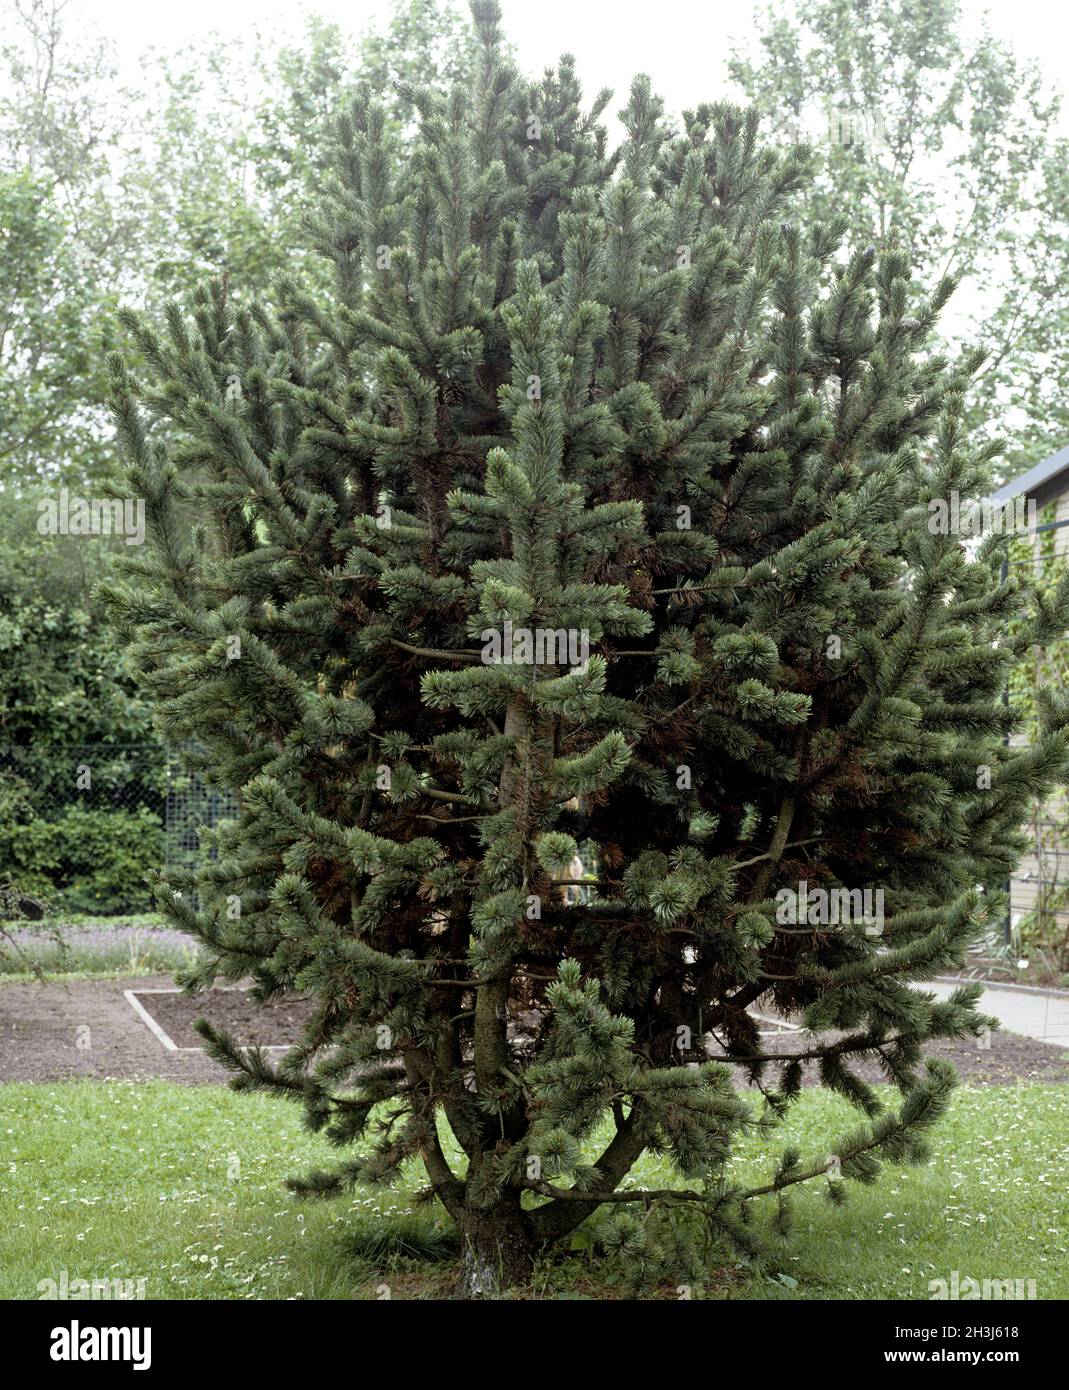 Green pine, pine, Pinus aristata Stock Photo